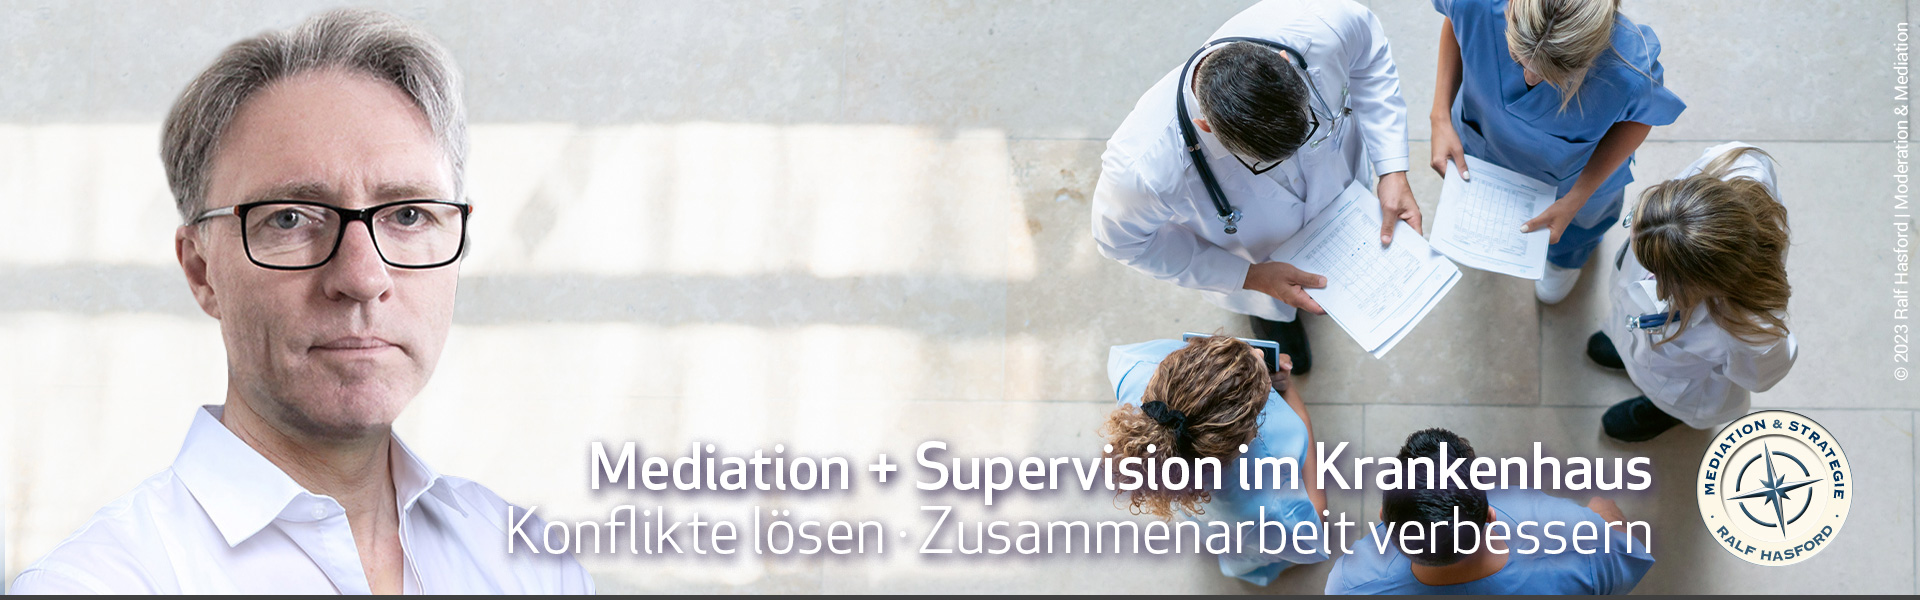 Ralf Hasford Supervision und Mediation im Krankenhaus / Gesundheitswesen